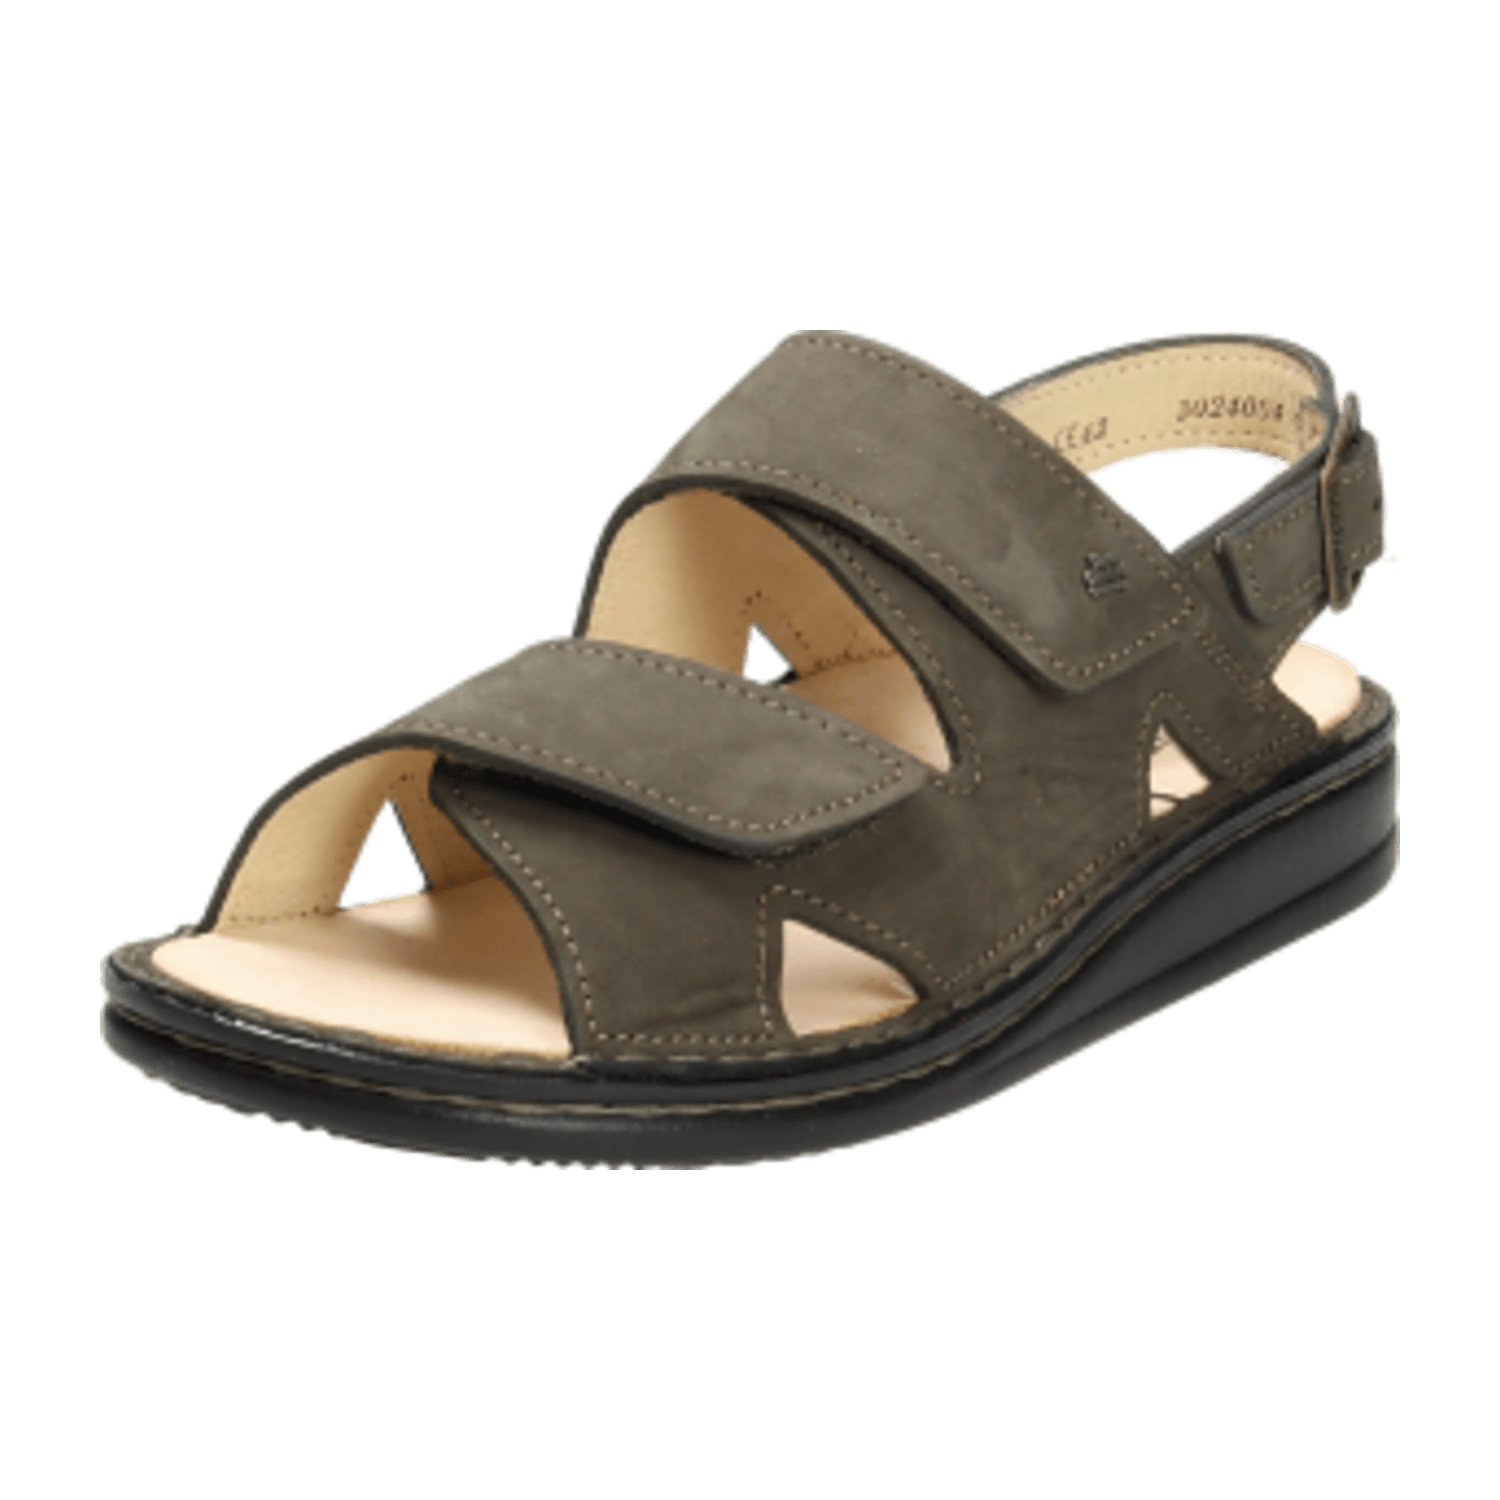 FinnComfort Toro-Soft Mud (Schlammbraun) - Sandale - Herrenschuhe Sandale / Pantolette, Braun, leder (nabuk)